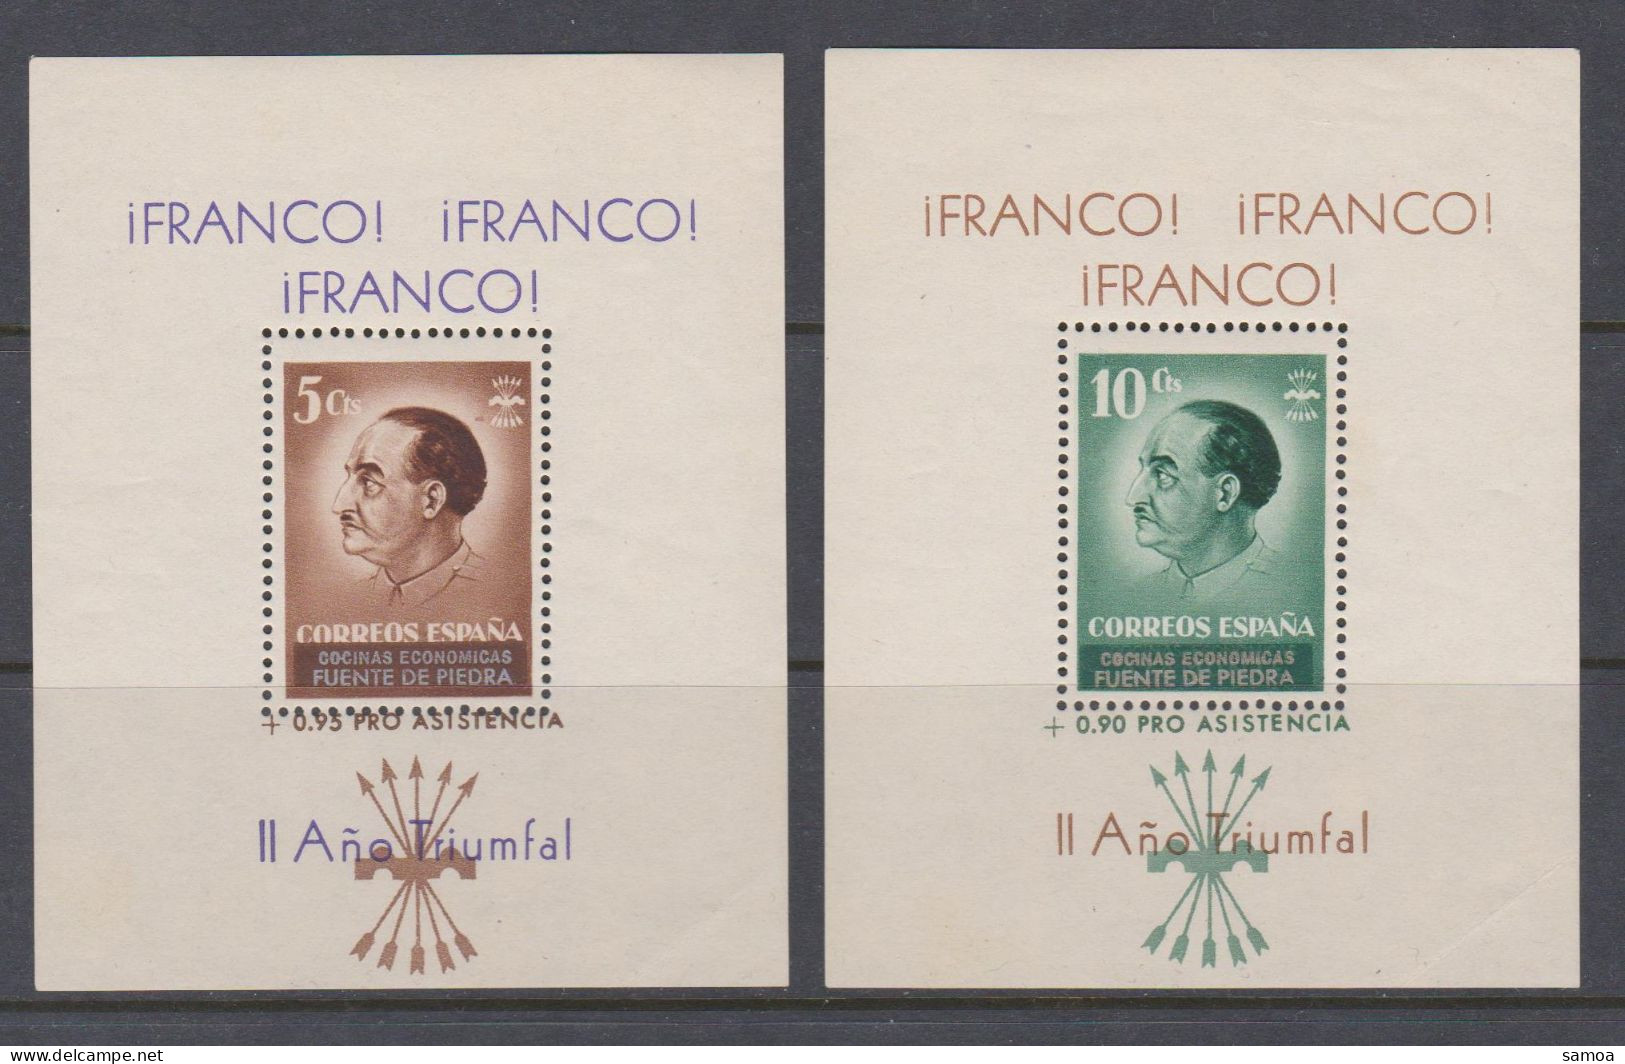 Espagne 1937 BL 5 Cts Brun 10 Cts Vert Franco Fuente De Piedra Pro Assistencia Año Triumfal - Blocks & Kleinbögen